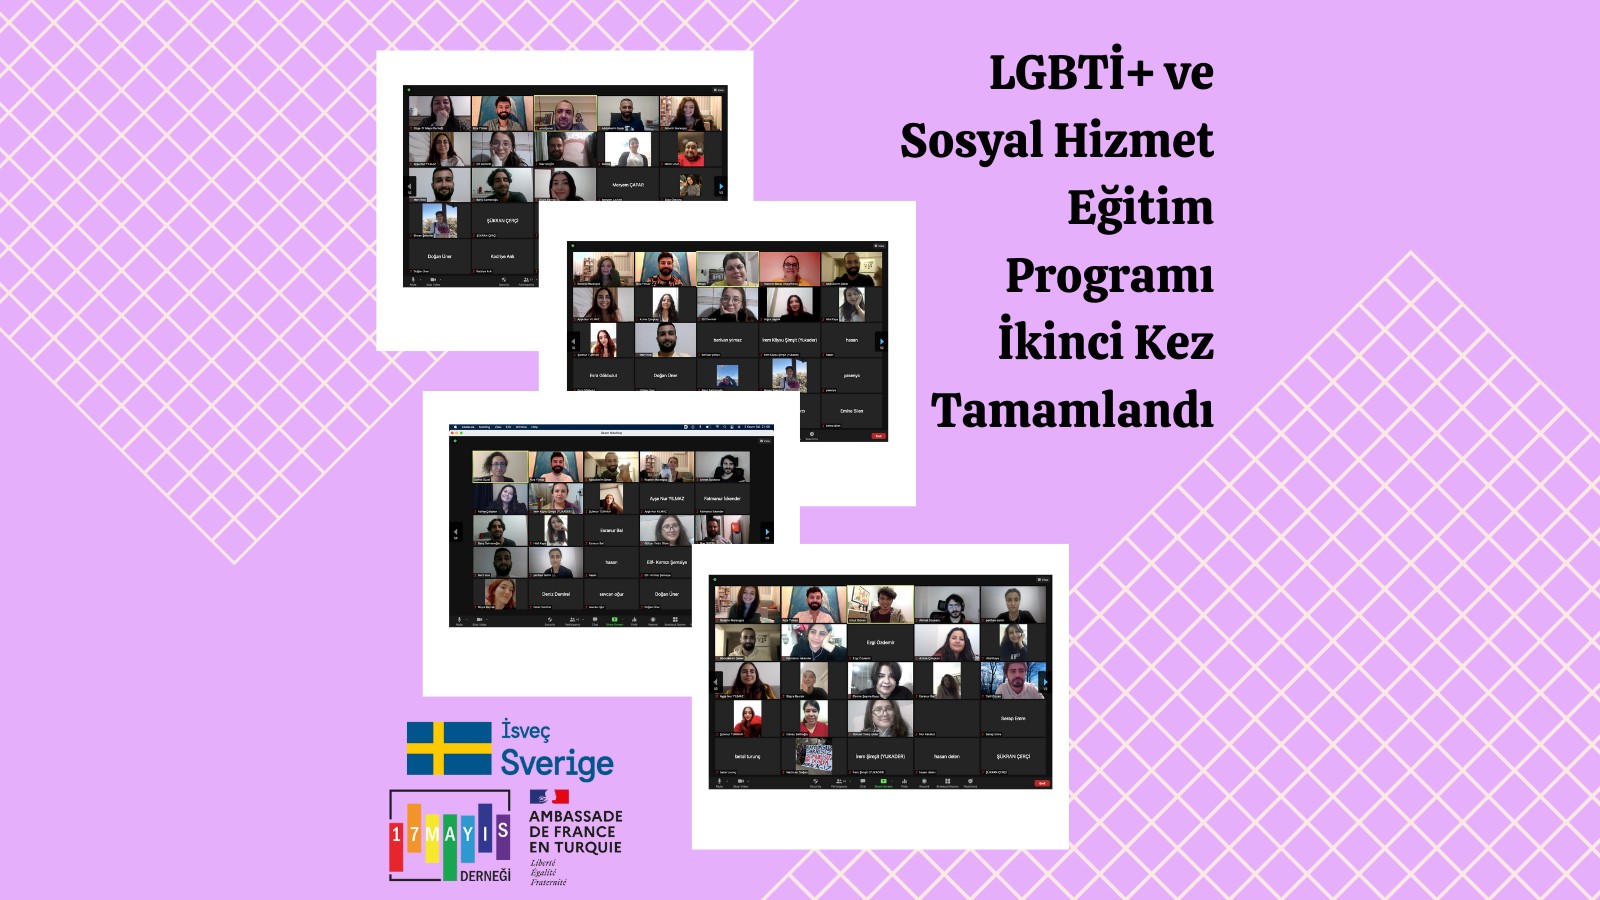 17 Mayıs’ın LGBTİ+ ve Sosyal Hizmet Eğitim Programı ikinci kez tamamlandı Kaos GL - LGBTİ+ Haber Portalı